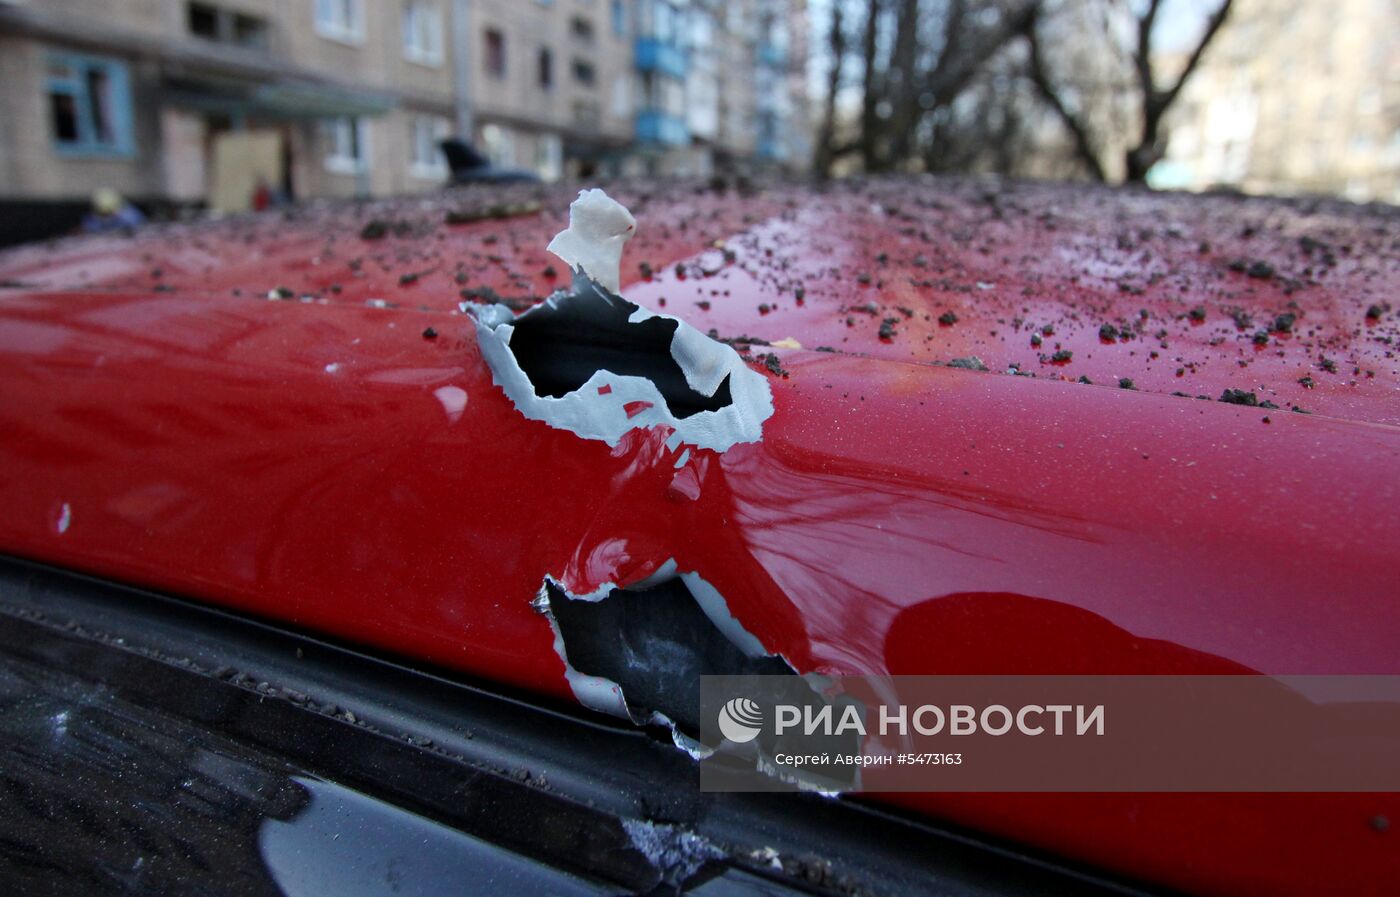 Последствия ночного обстрела в Донецке